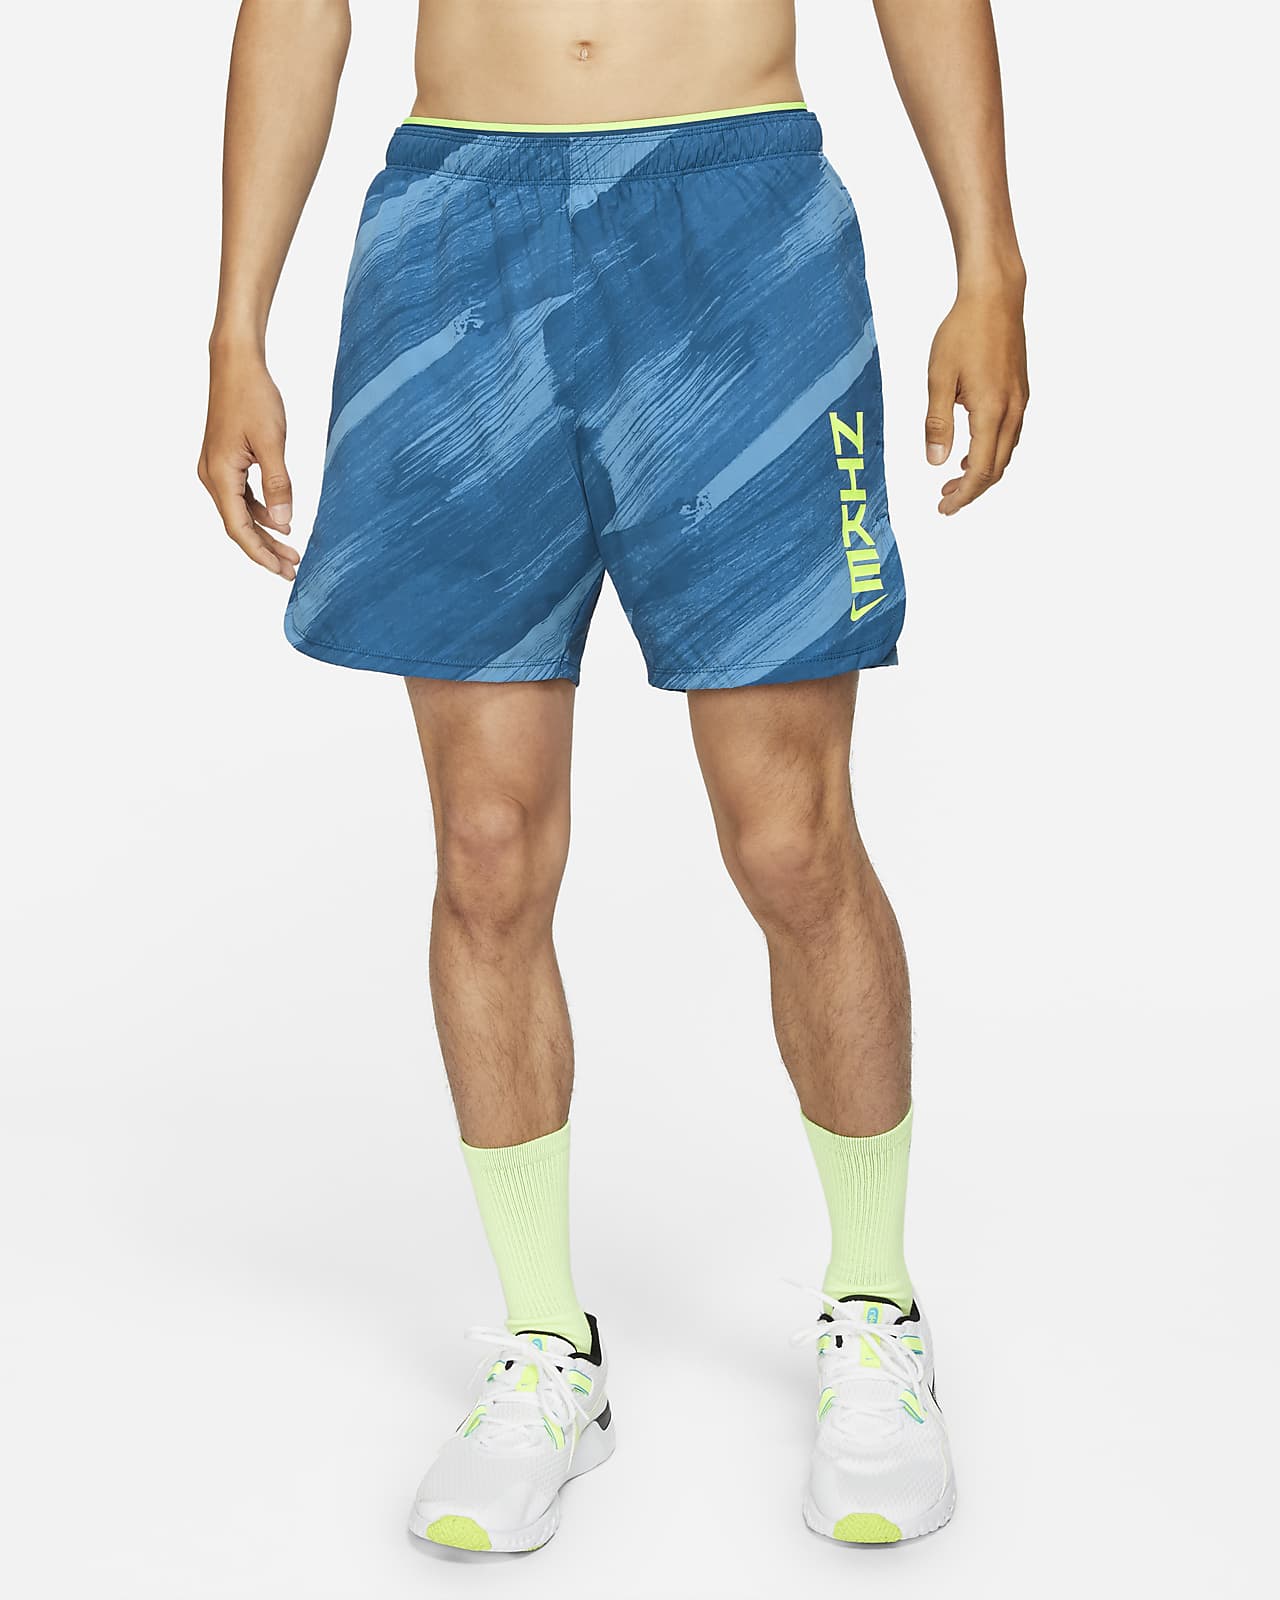 Nike Dri-FIT Sport Clash 男款梭織訓練短褲